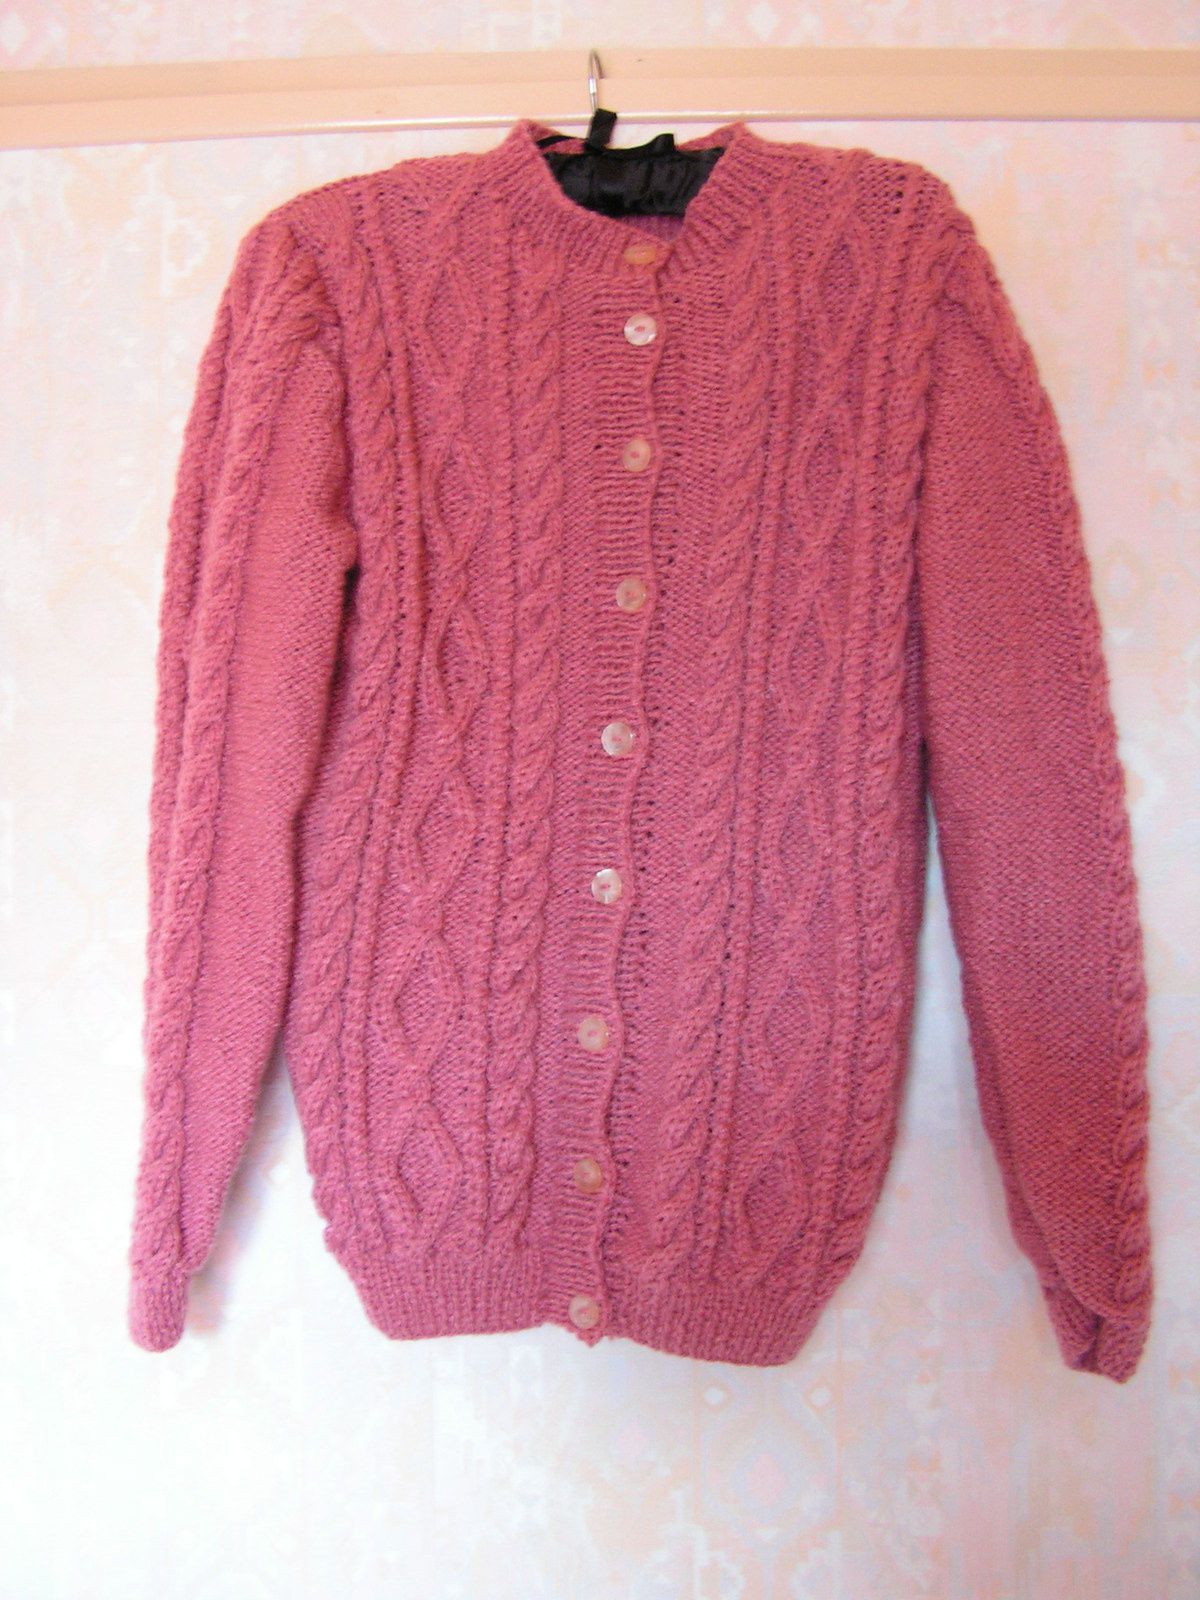 tricot : un gilet vieux rose - kekeli bricole